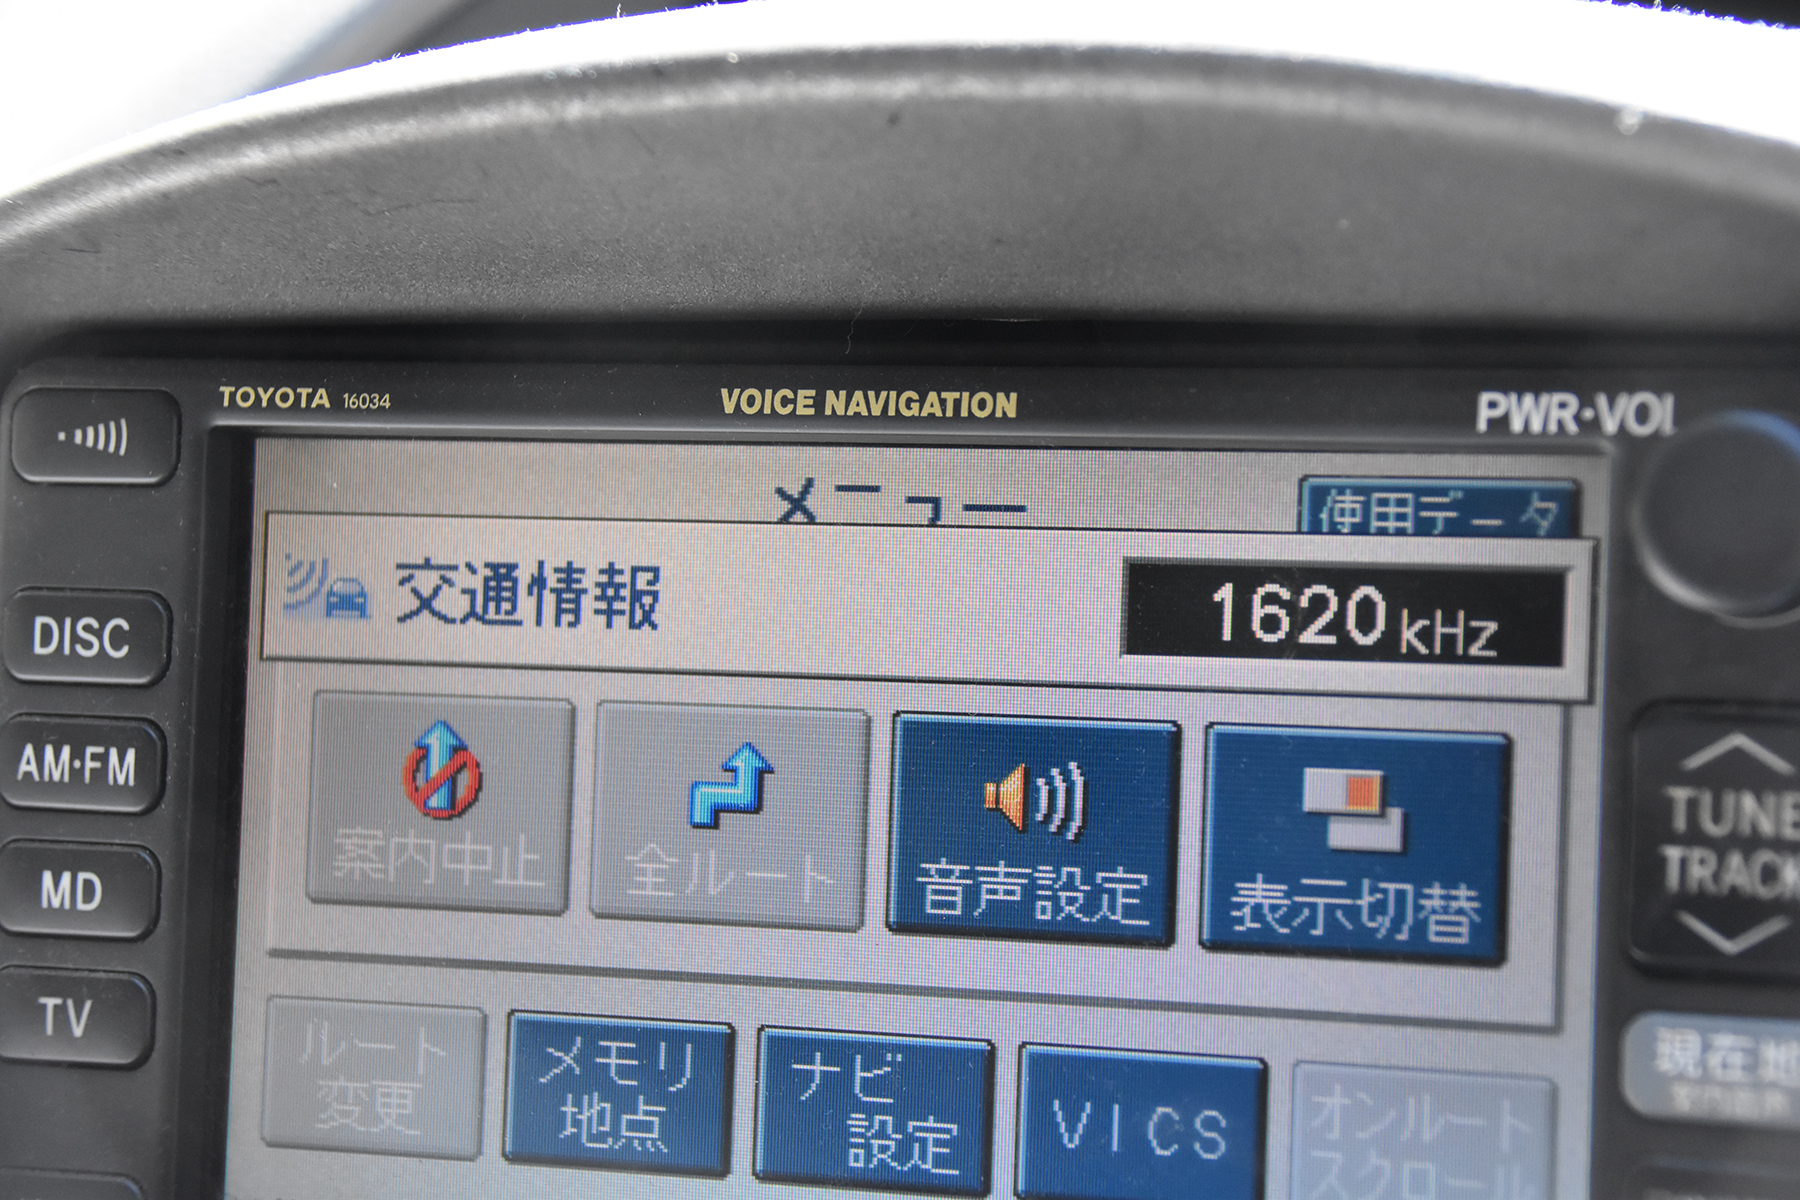 1620kHzに設定された車載のラジオ